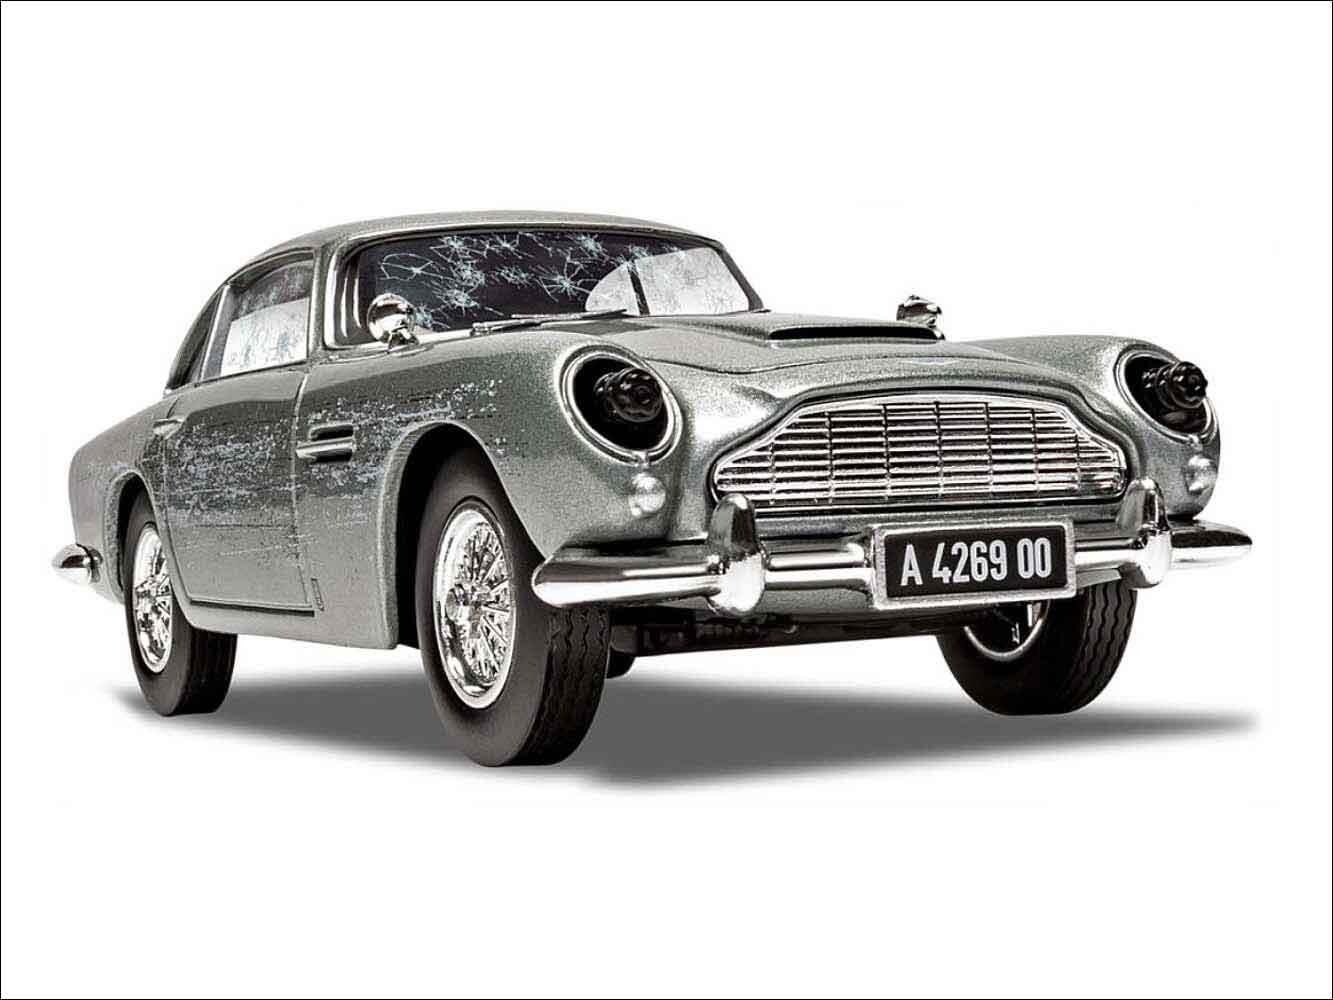 Aston Martin DB5 'No Time To Die' James Bond